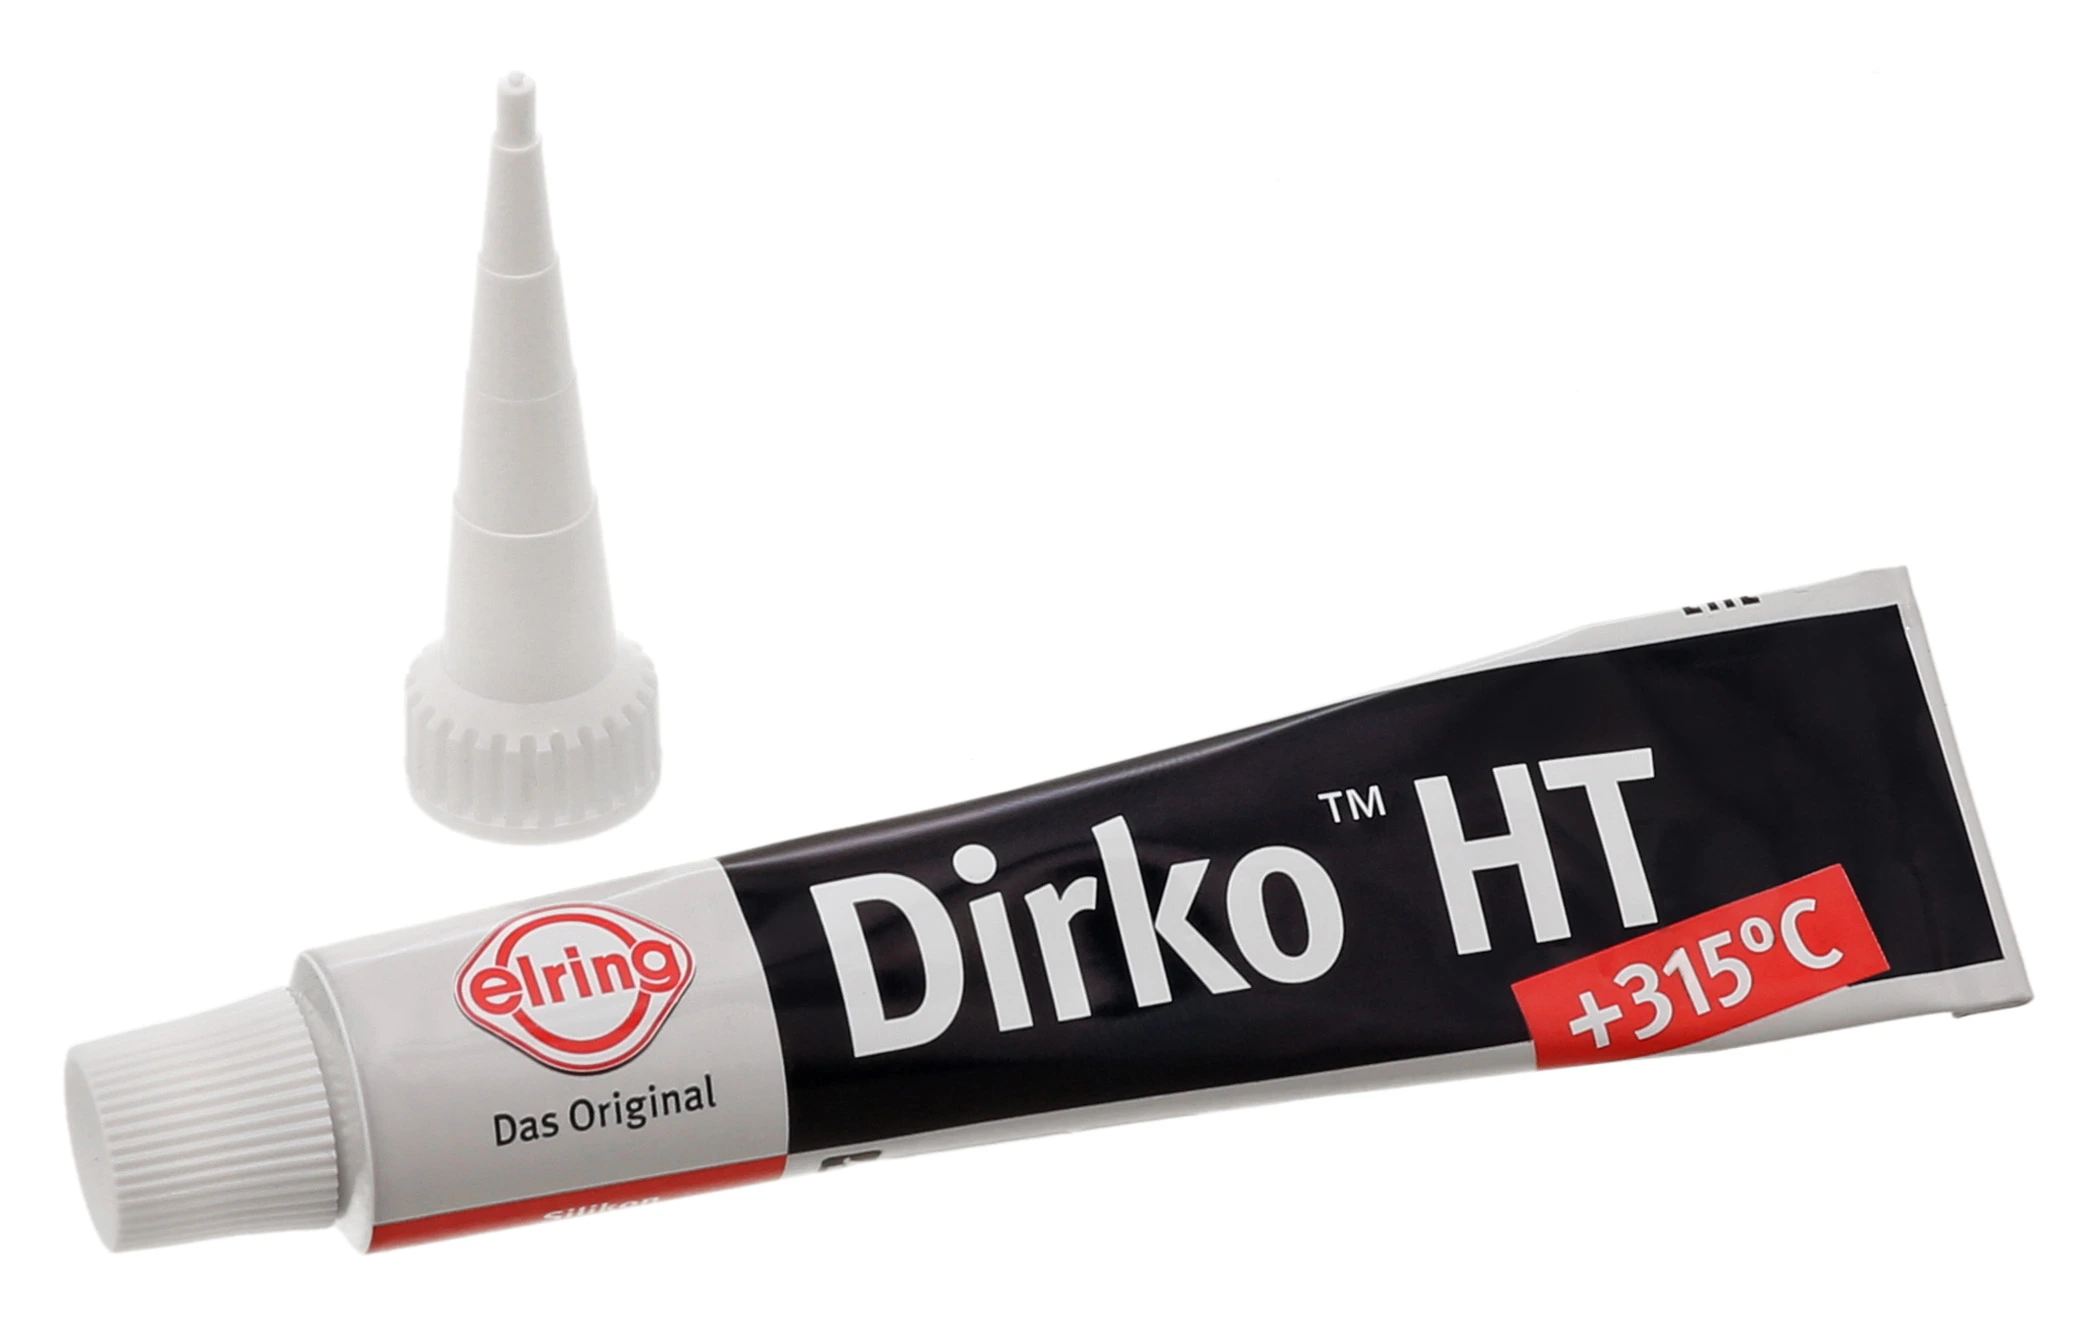 Elring Dirko HT oxim (315 C) Flüssigdichtungssatz, grau, Silikonverbindung,  310 ml Kartusche, Parts United Marine & Offshore